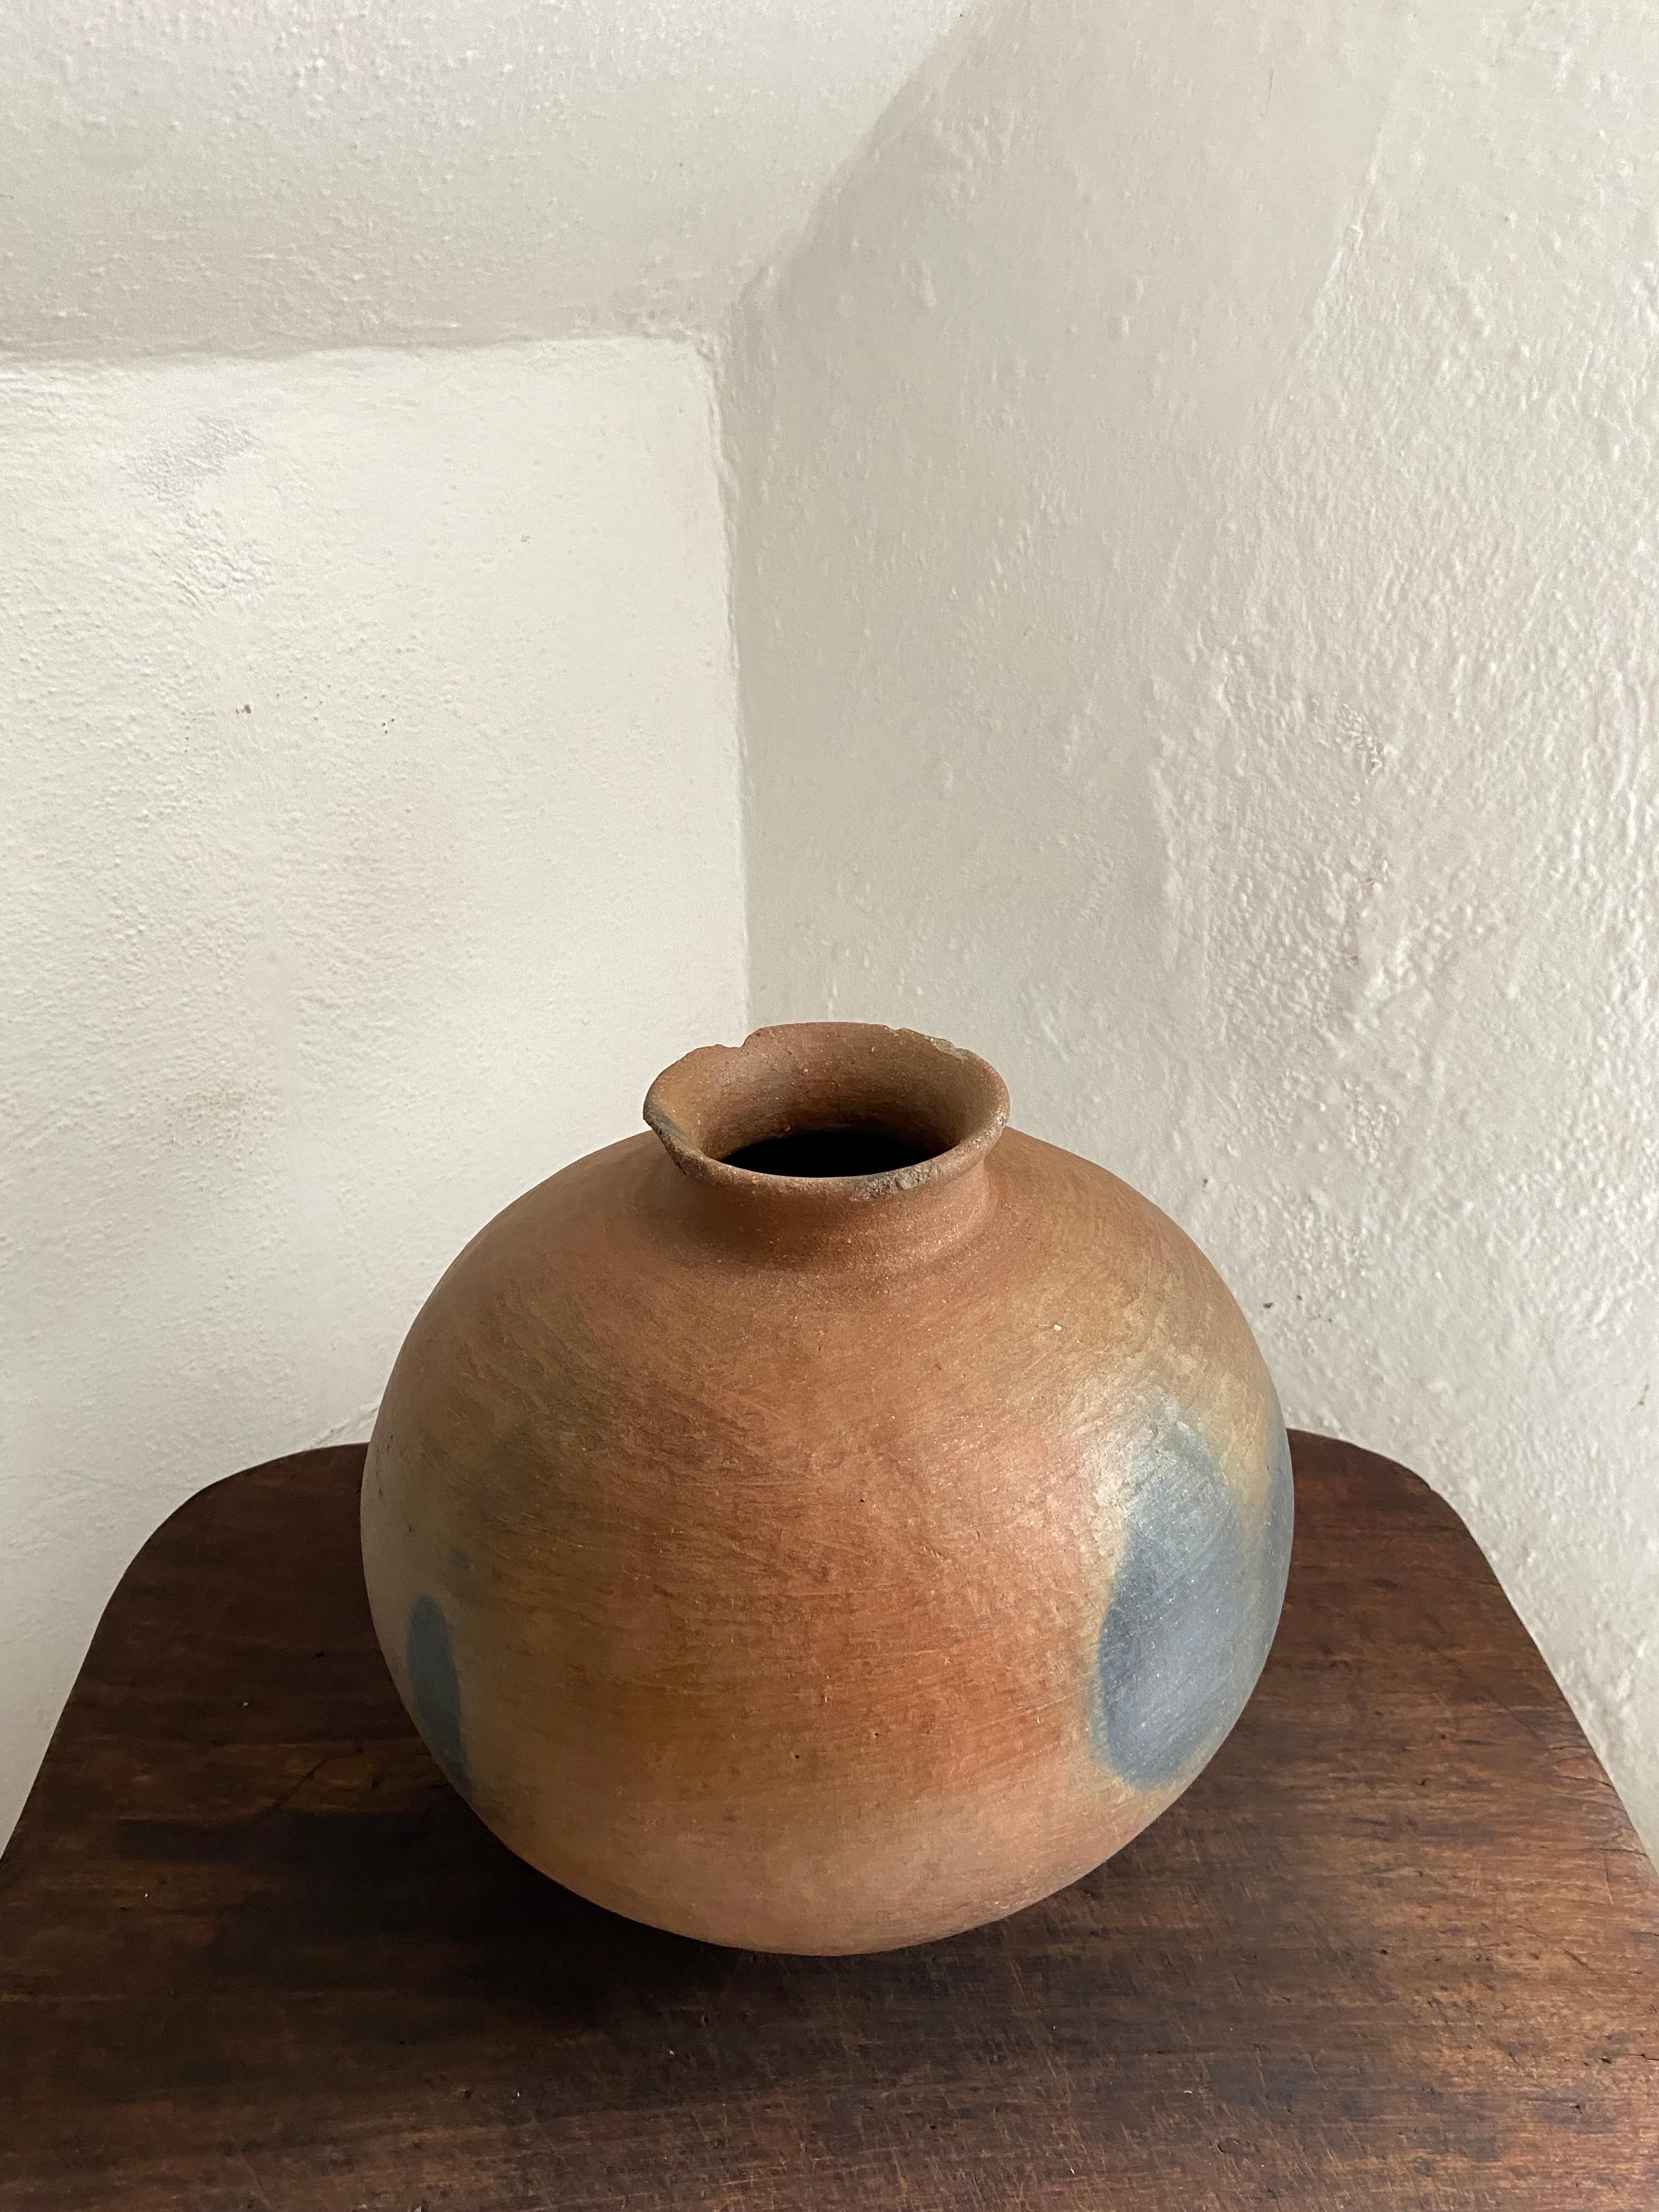 Ceramic Terracotta Pot From The Mixteca Region Of Oaxaca, Mexico, Circa 1940's